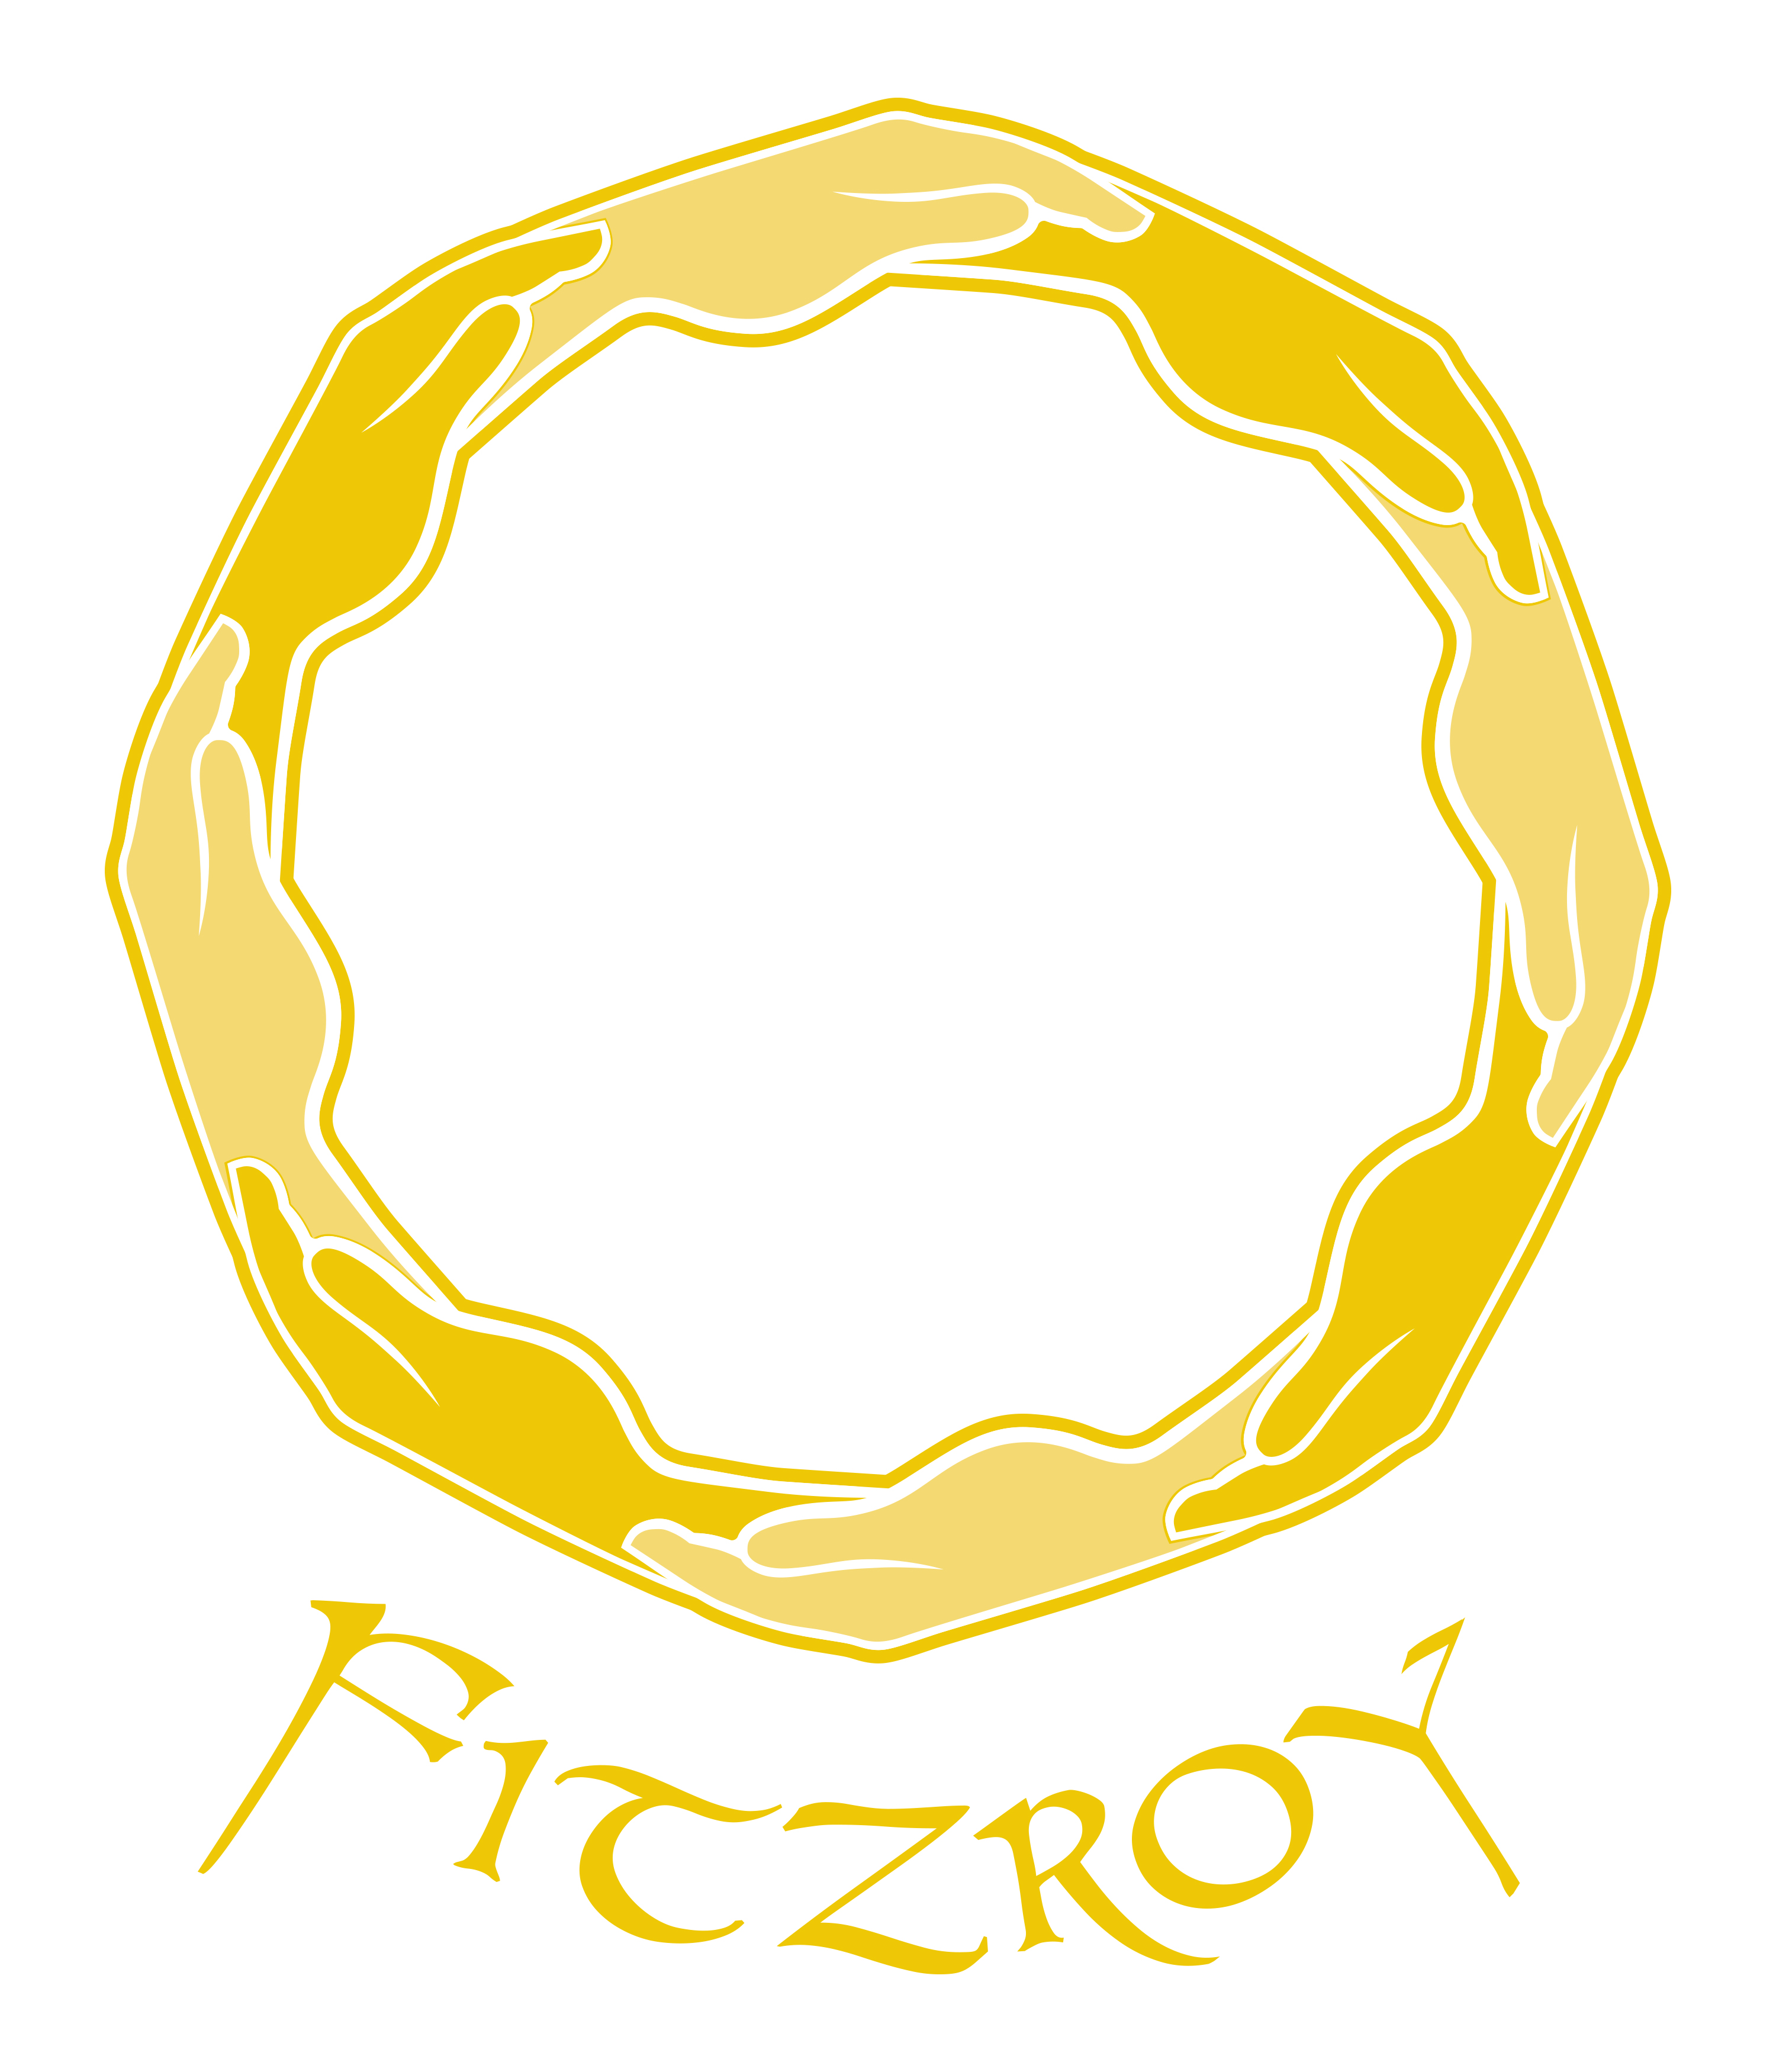 FIitzroy+name.jpg